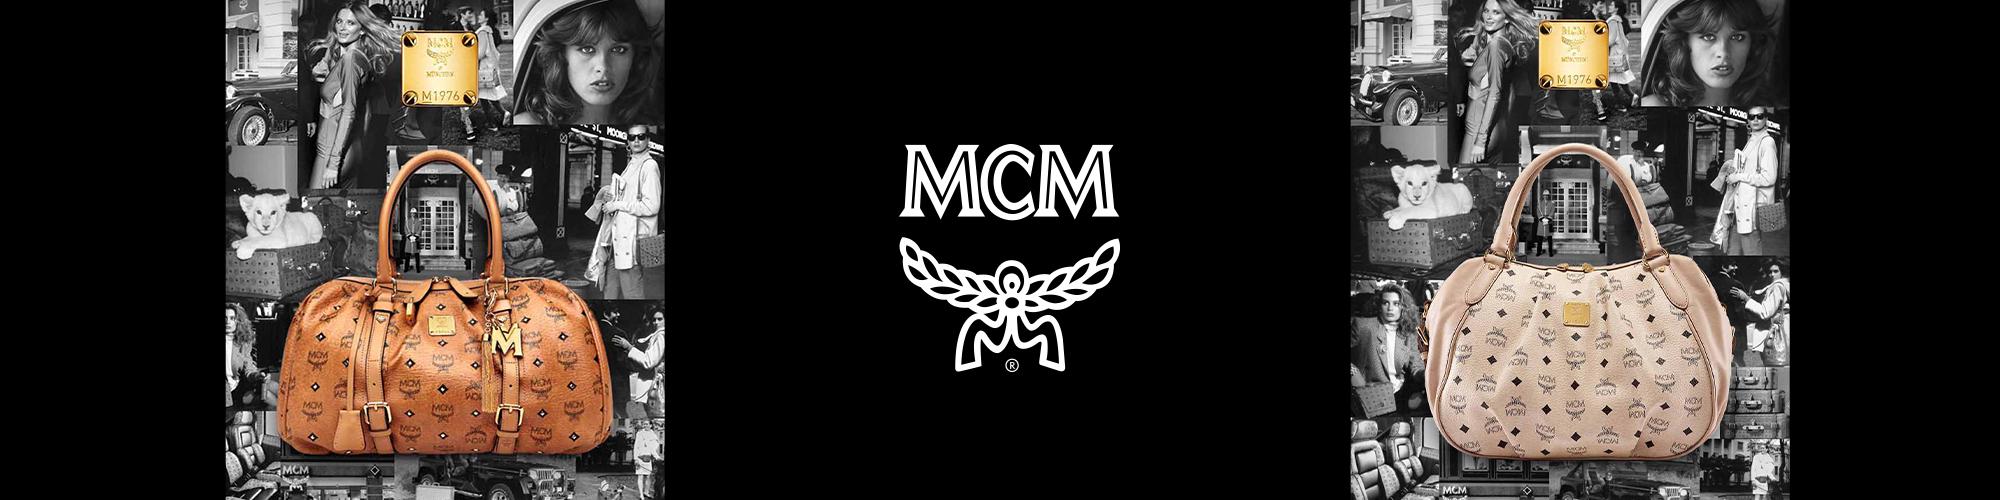 25 MCM ideas  mcm bags, bags, mcm